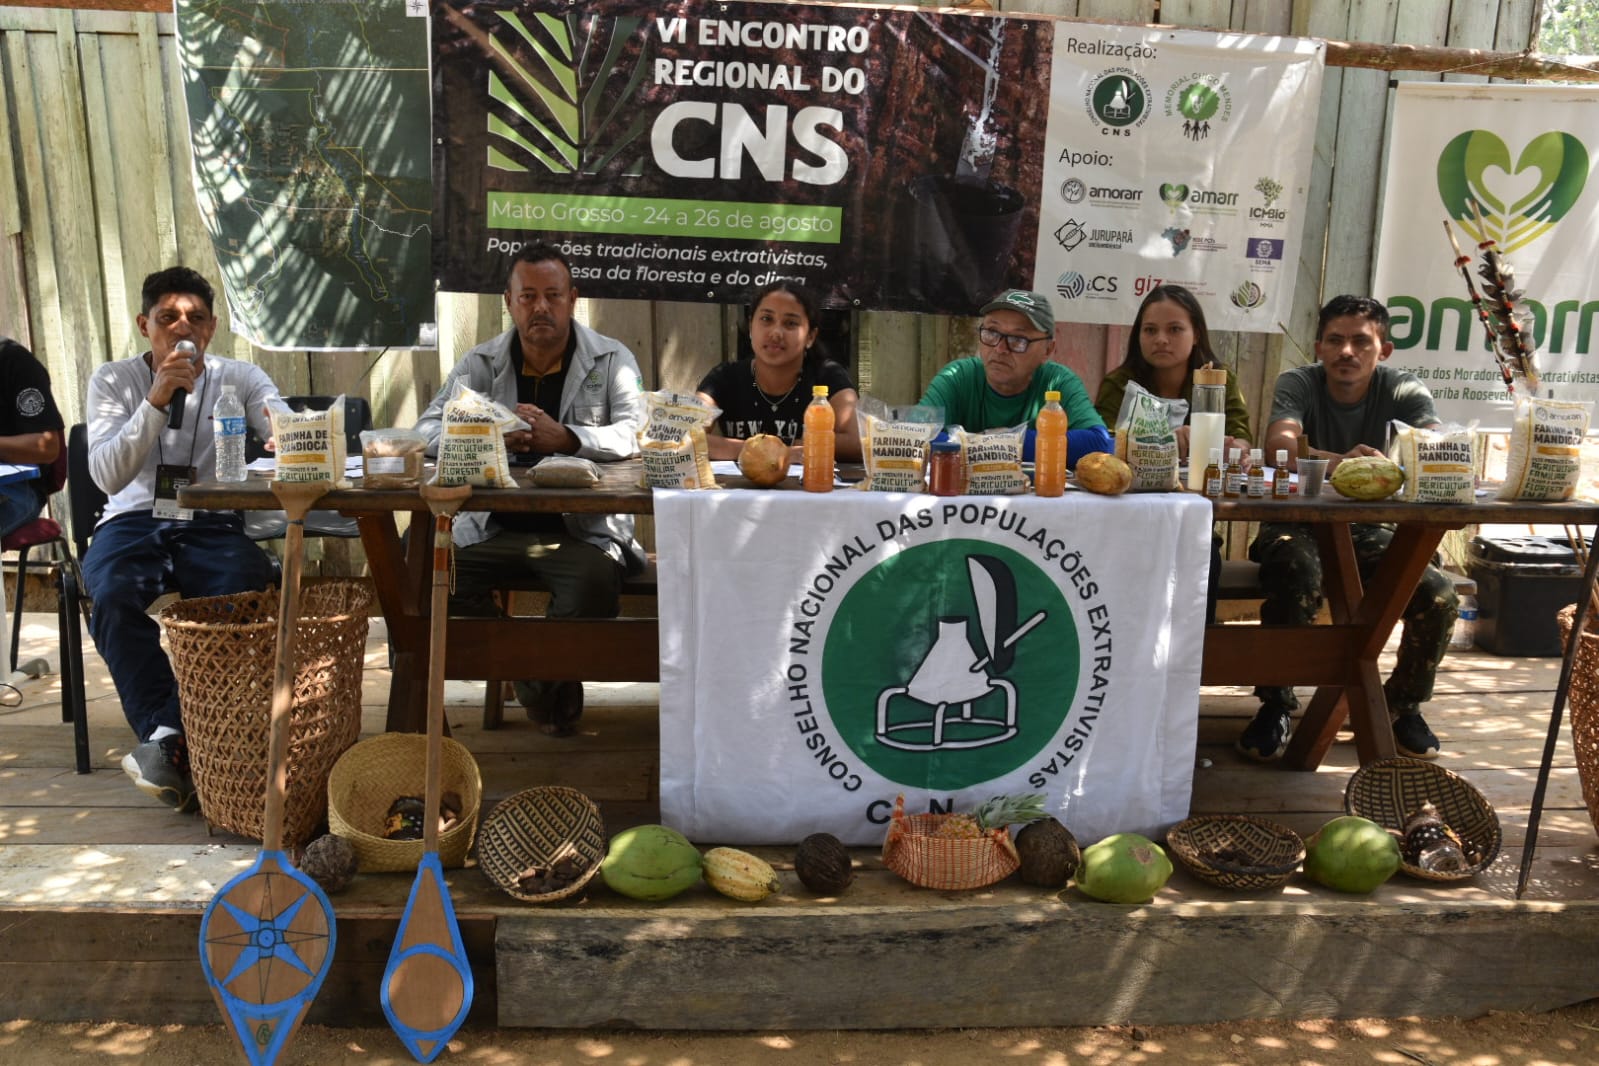 CNS - Conselho Nacional das Populações Extrativistas